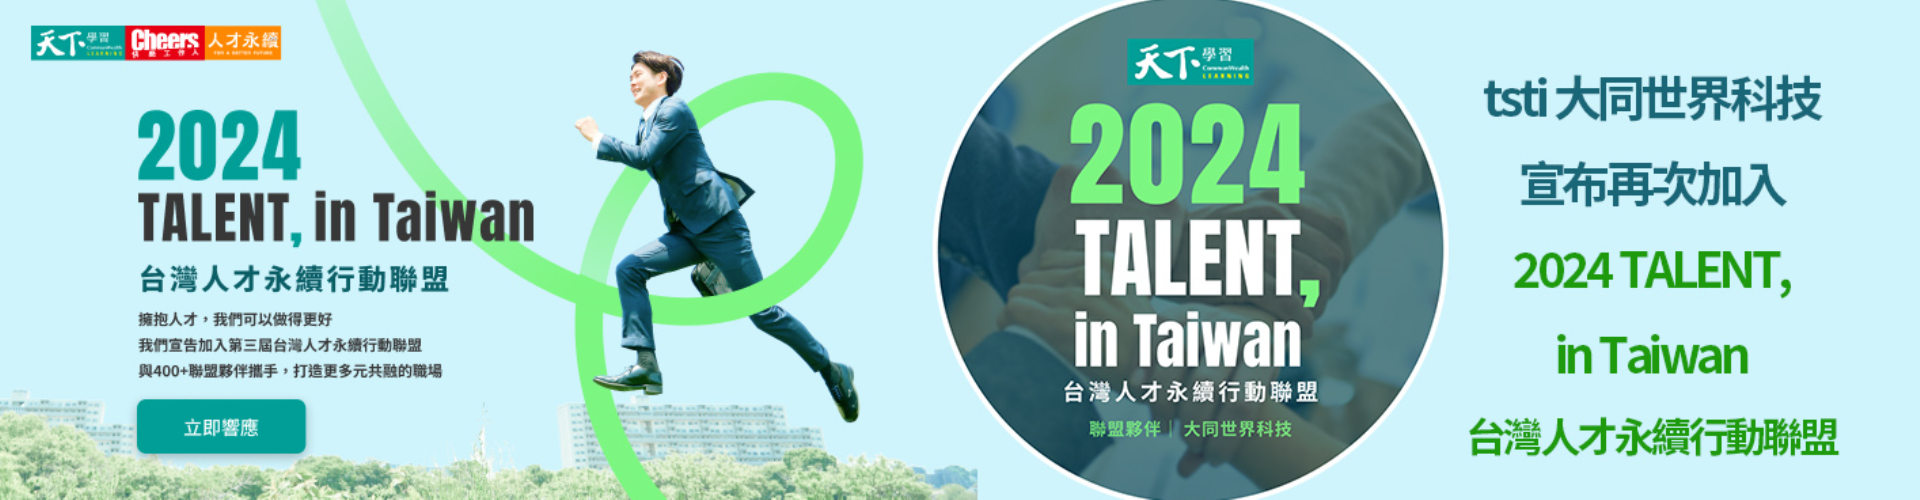 大世科-大世科-台灣人才永續行動 TALENT,in Taiwan 企業